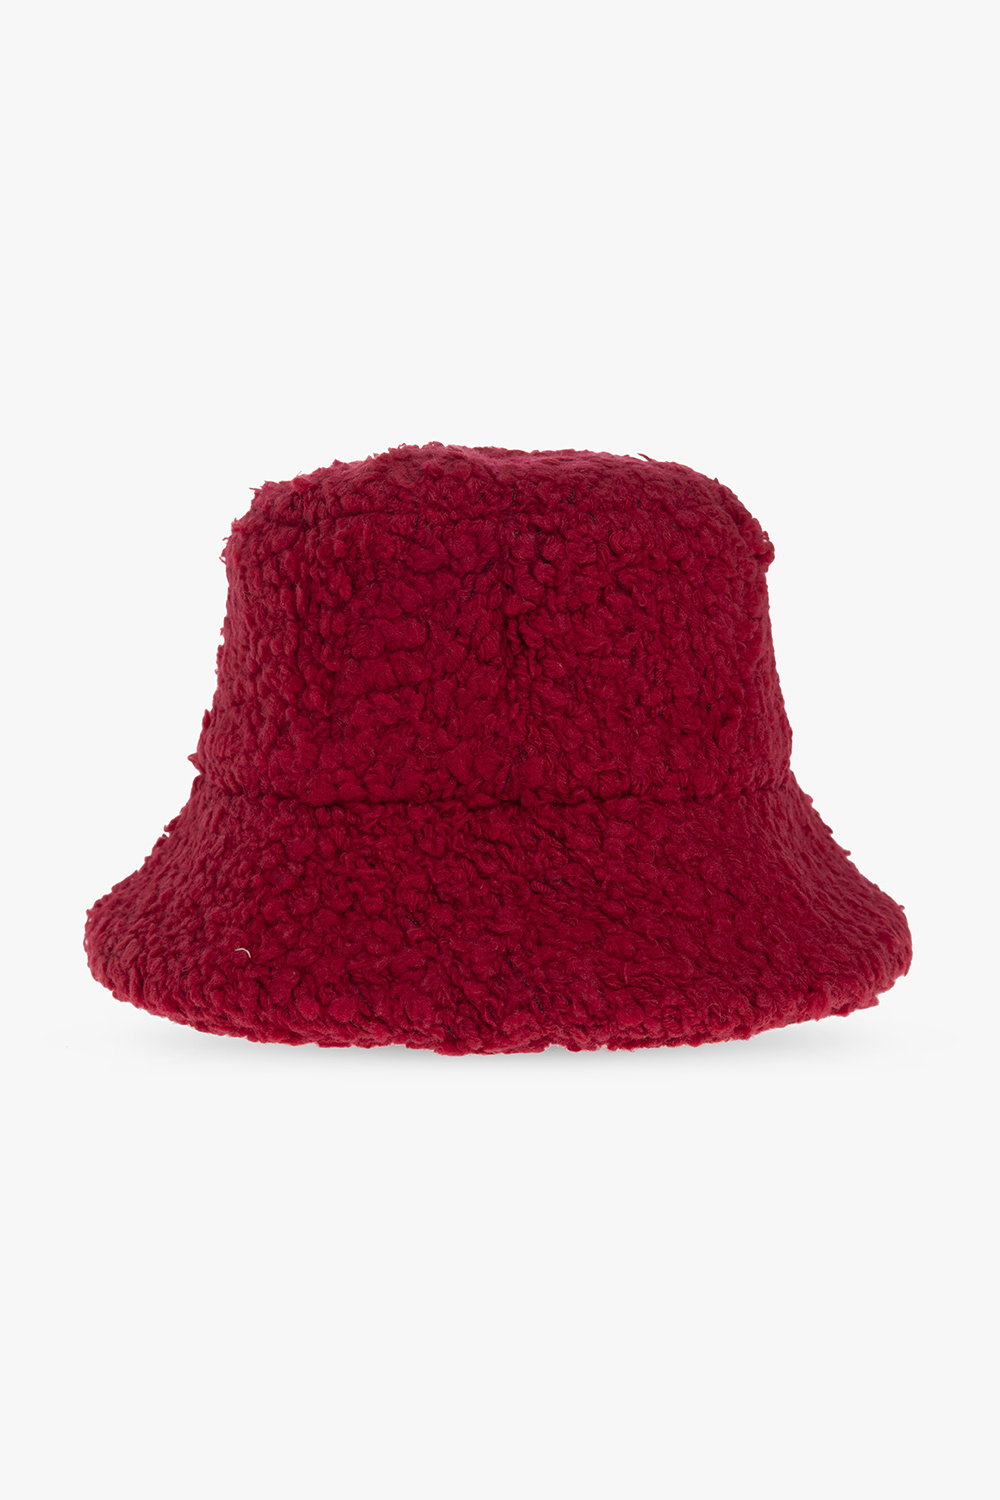 Lanvin Wool hat